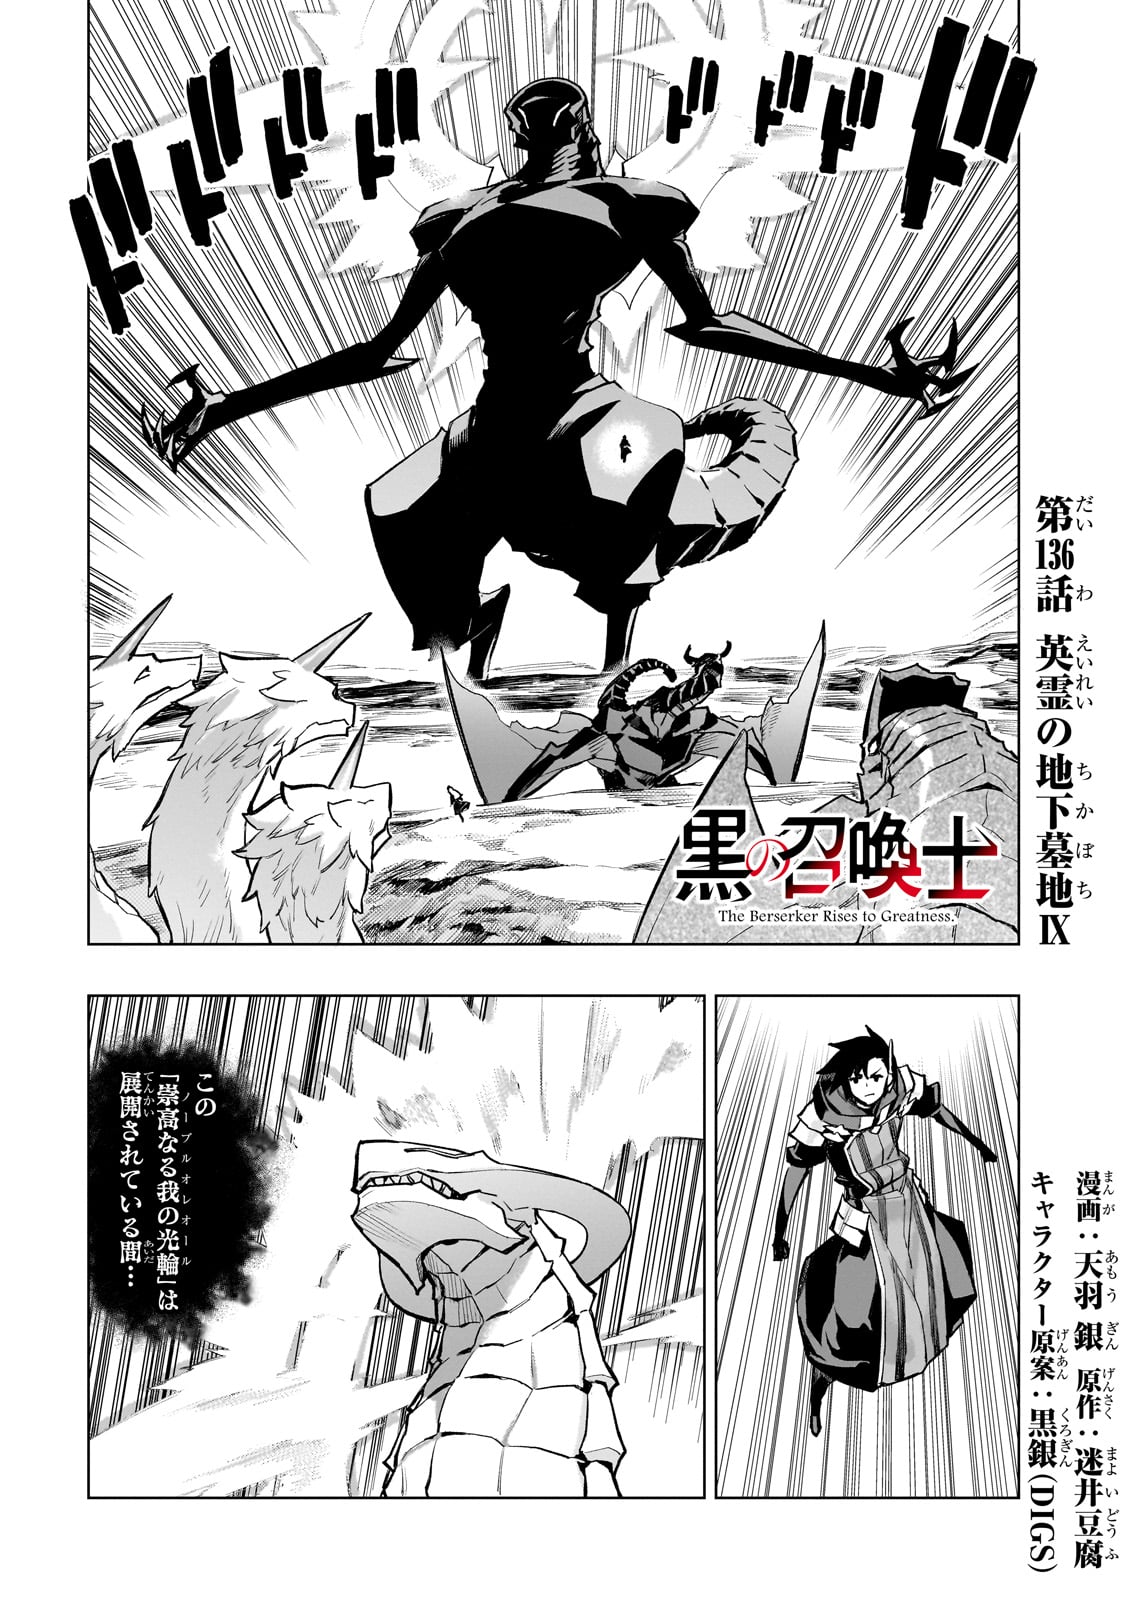 Kuro no Shoukanshi - Chapter 136 - Page 1